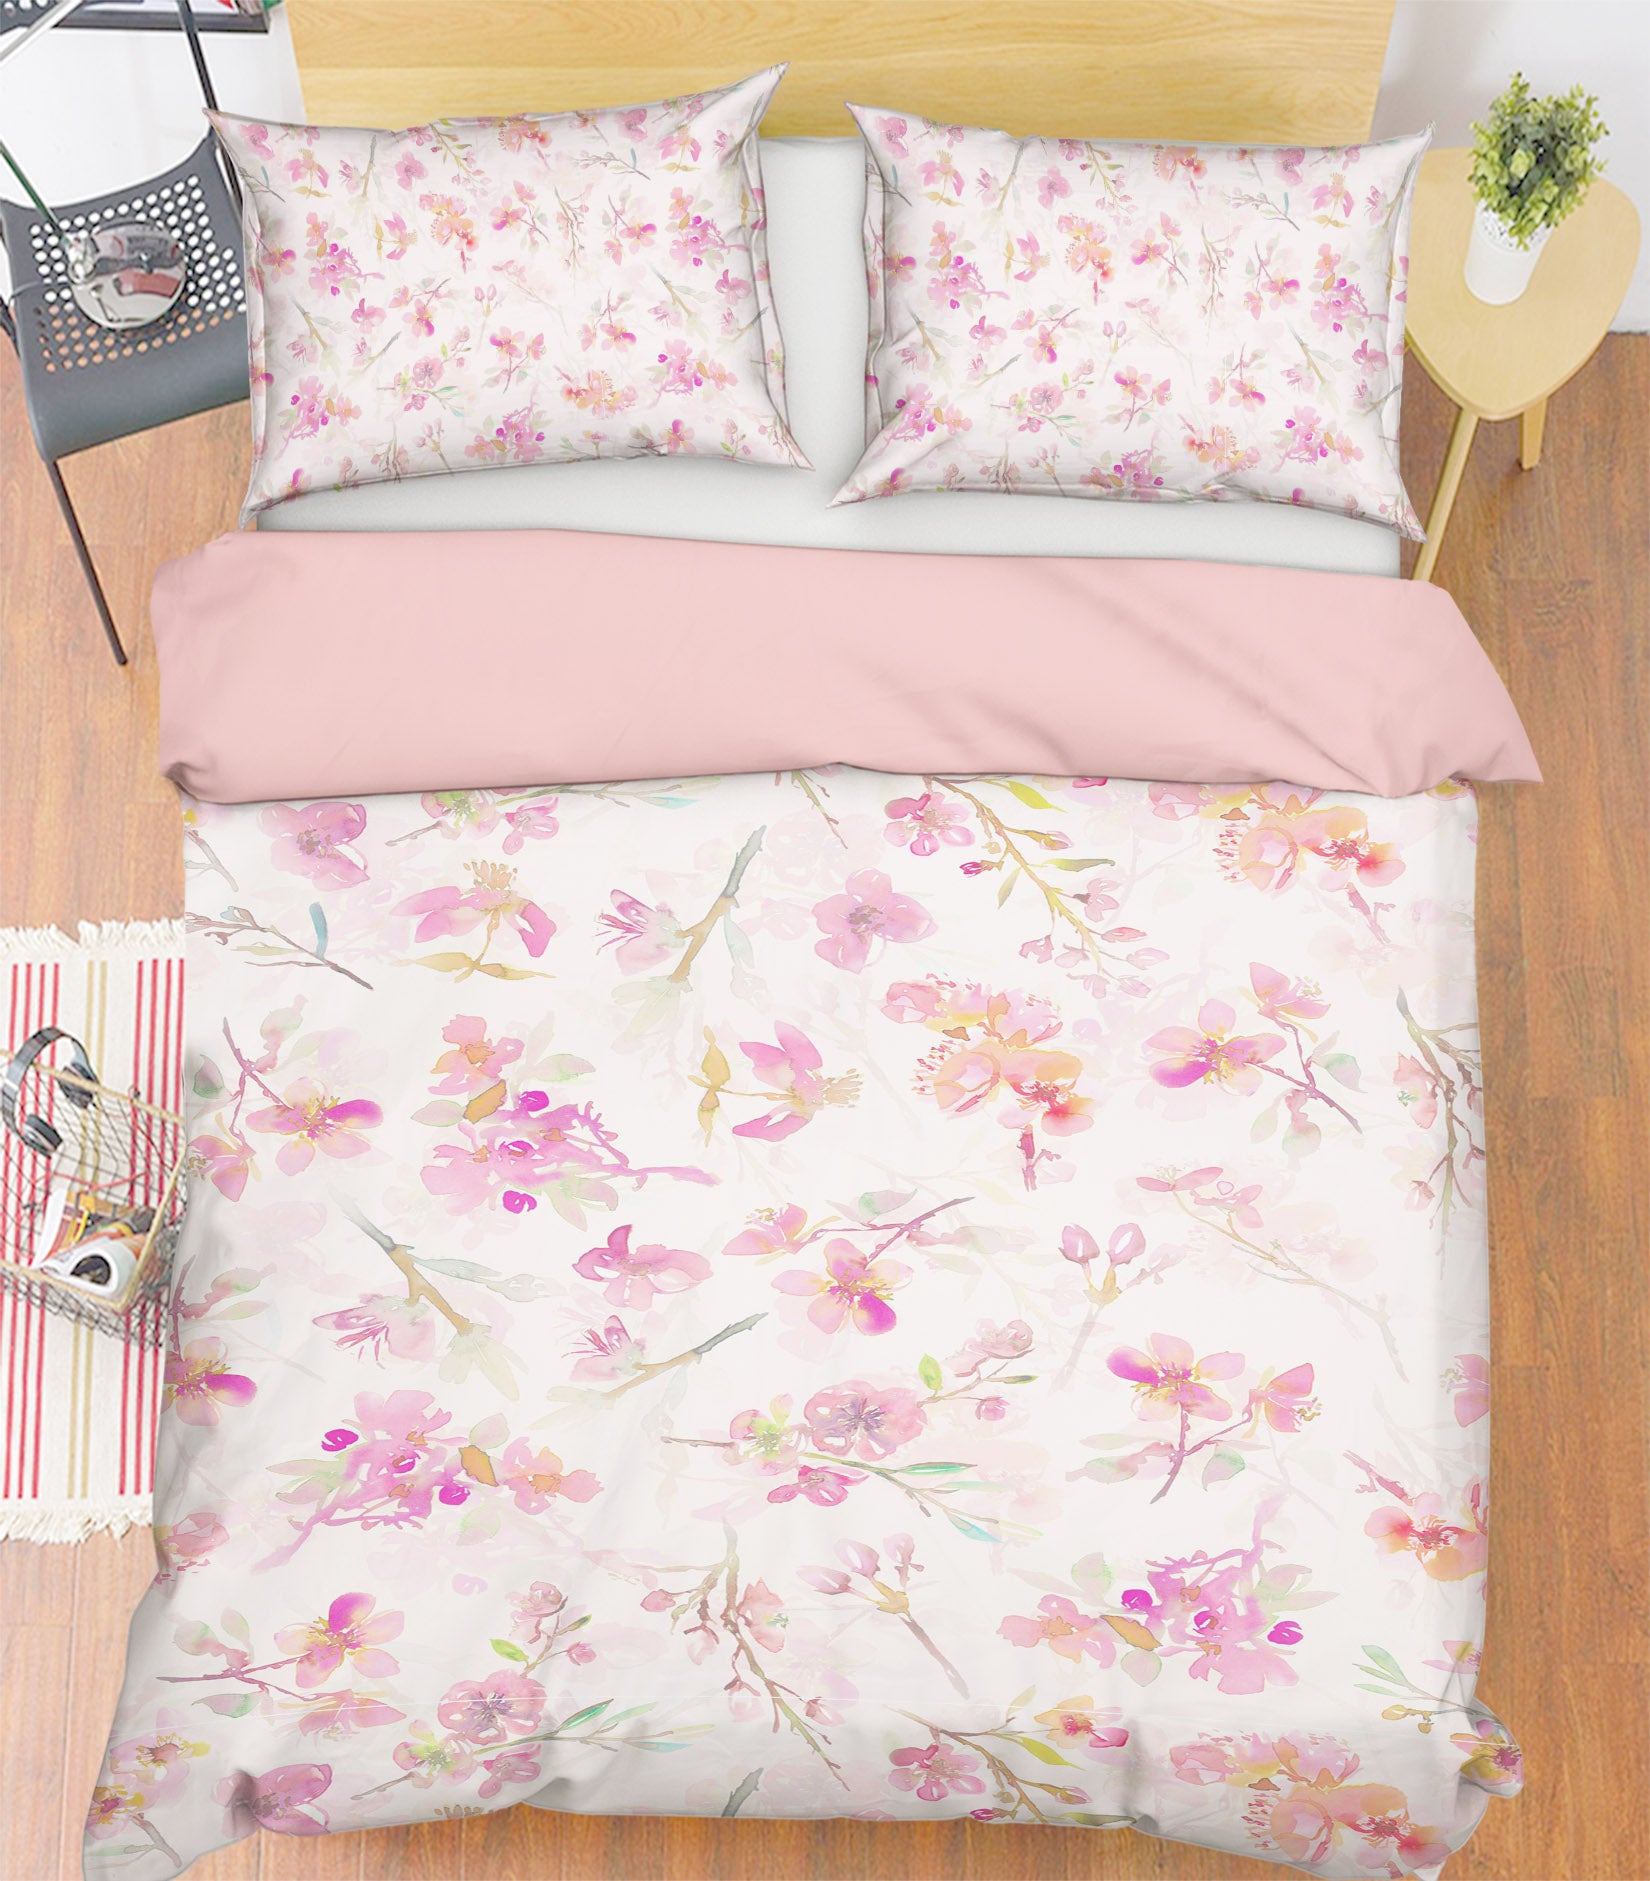 3D Pink Flowers 055 Uta Naumann Bedding Bed Pillowcases Quilt